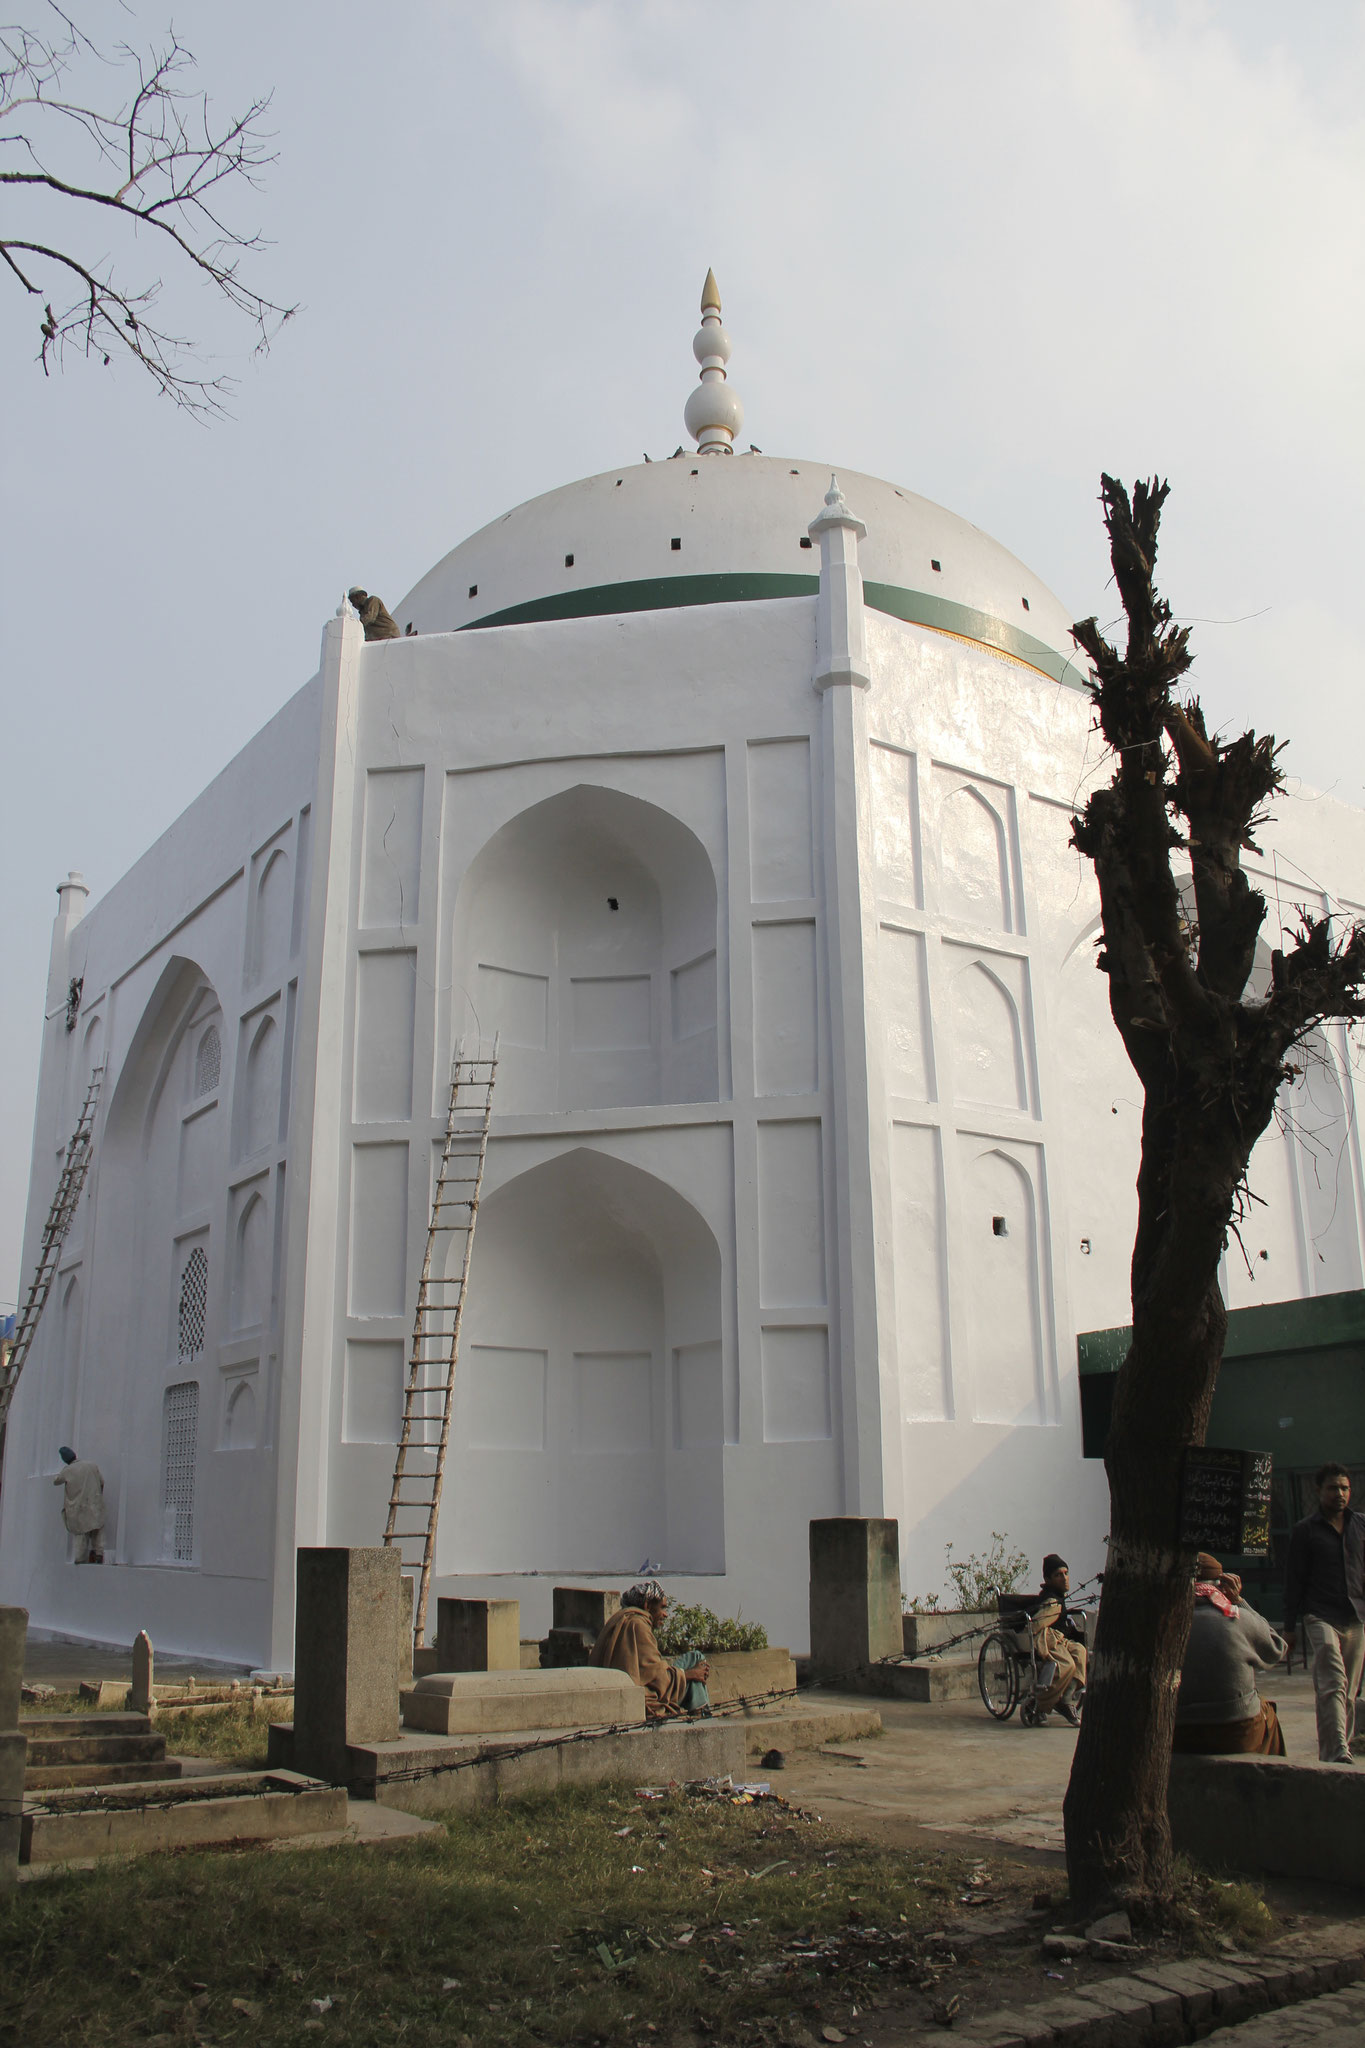 Sultan Masood Dakiks vollendete Renovierung des Mausoleum von Sayyid Mir Jan